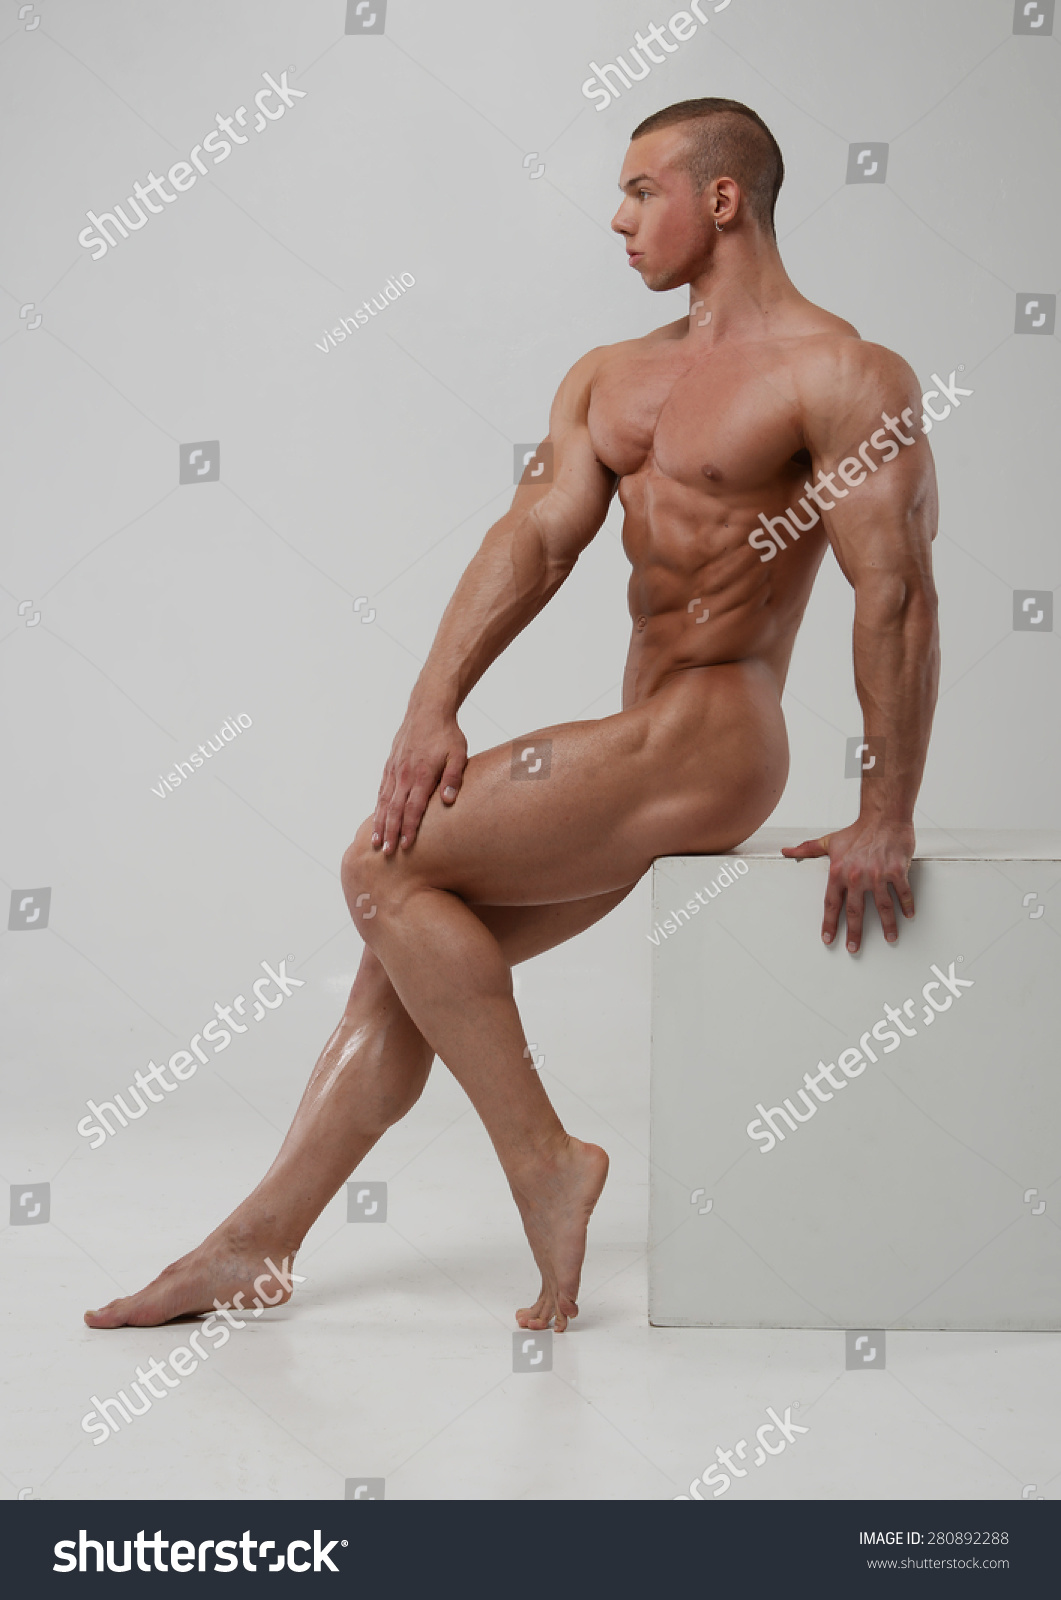 Fitness model naked